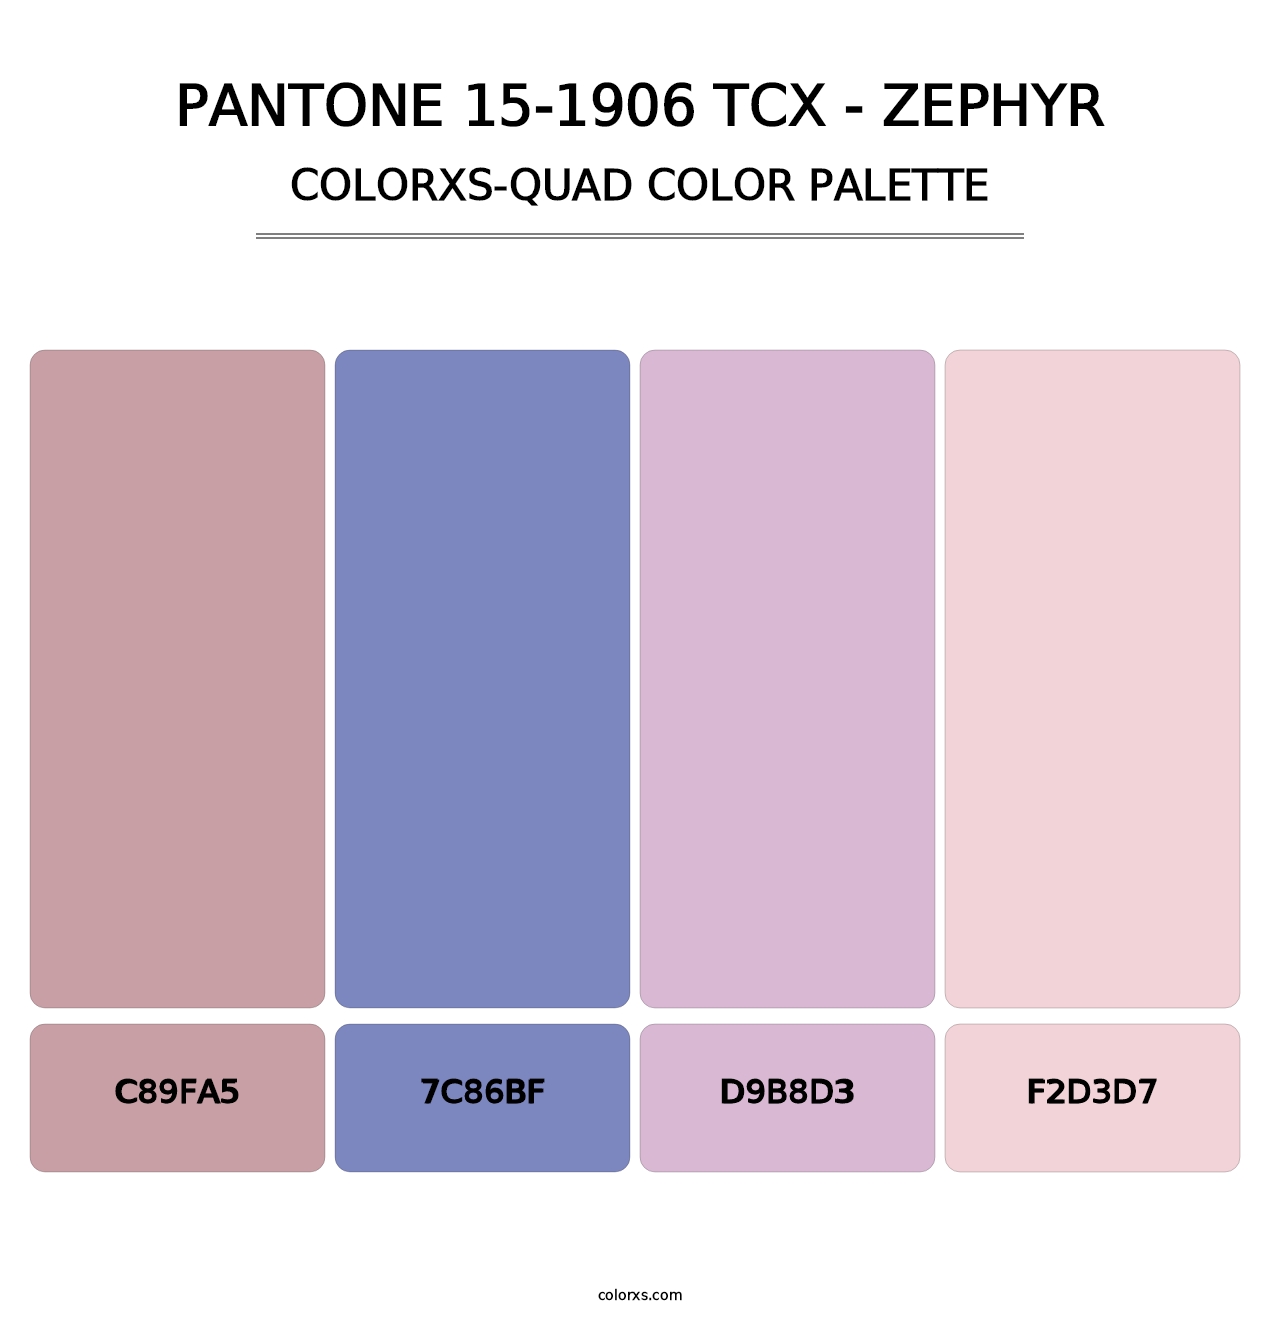 PANTONE 15-1906 TCX - Zephyr - Colorxs Quad Palette